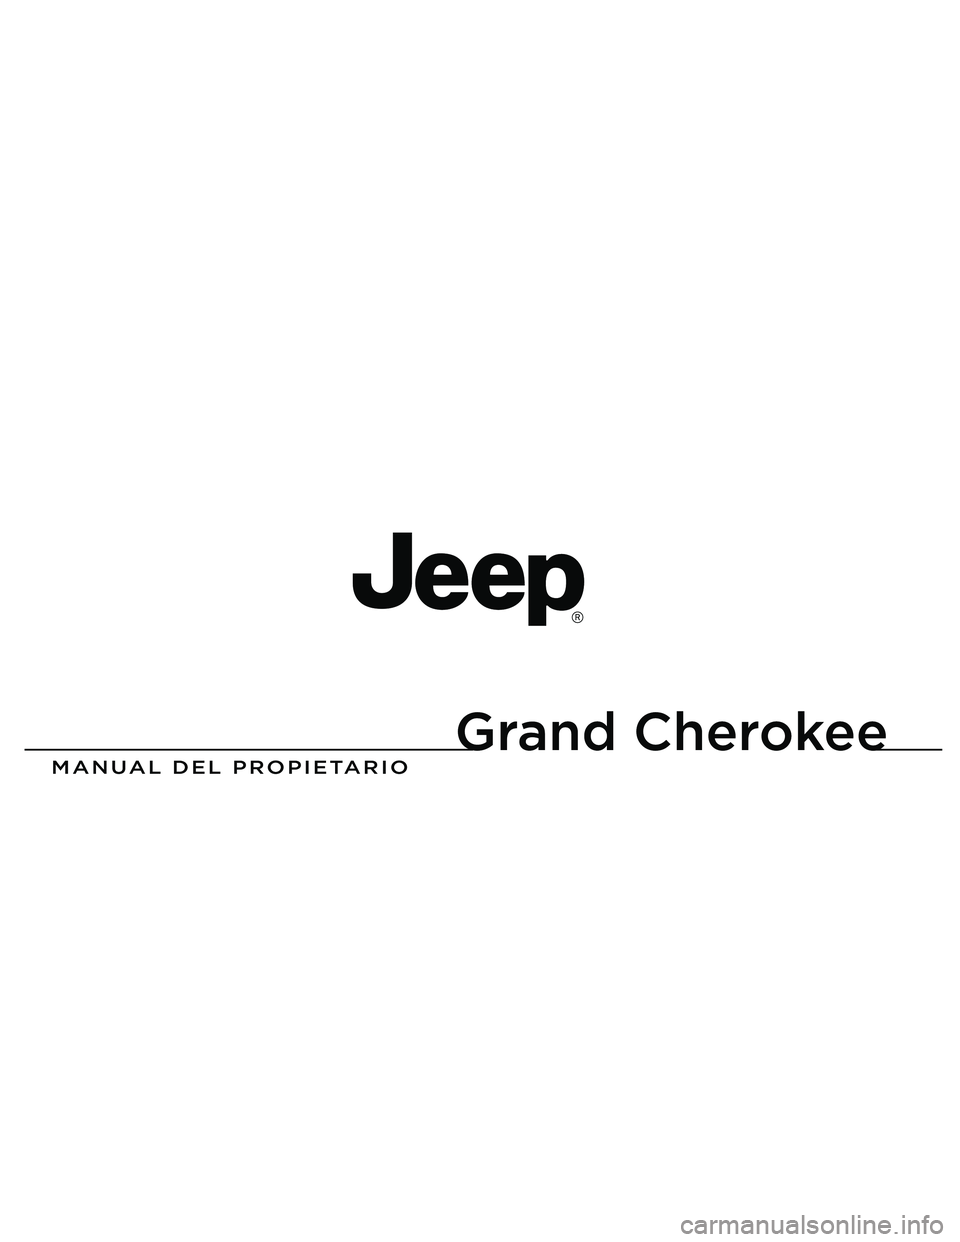 JEEP GRAND CHEROKEE 2015  Manual de Empleo y Cuidado (in Spanish) 
Grand Cherokee

MANUAL DEL PROPIETARIO
2013 Grand Cherokee
13WK741-126-PRI-AAImpreso en EE.UU. 13 